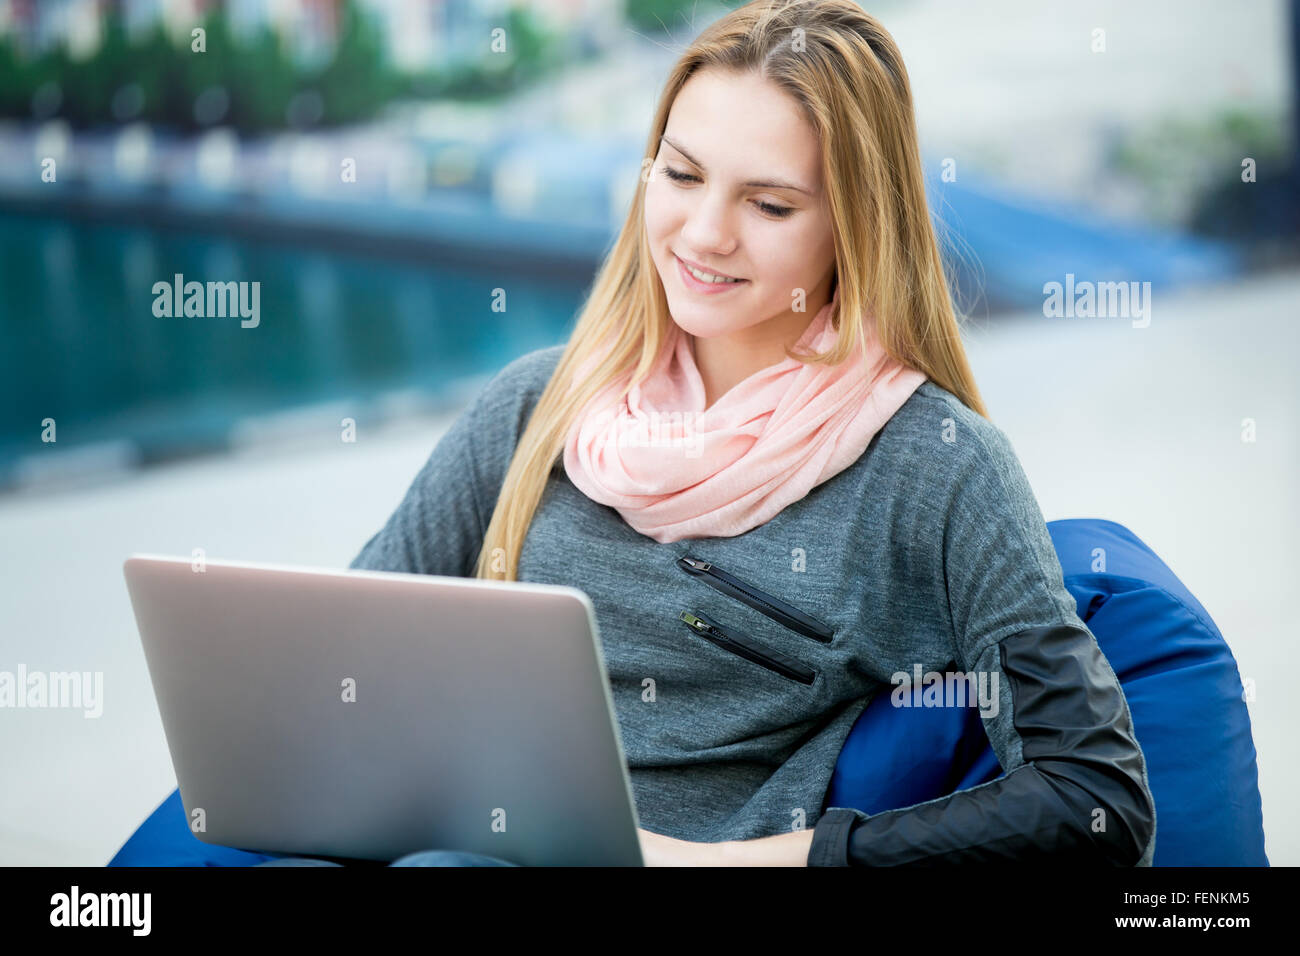 Entspannte junge Frau sitzen in bequemen Sitzsack mit Laptop, glücklich lächelnd, Online-shopping, Studium, arbeiten. Landschaft Stockfoto